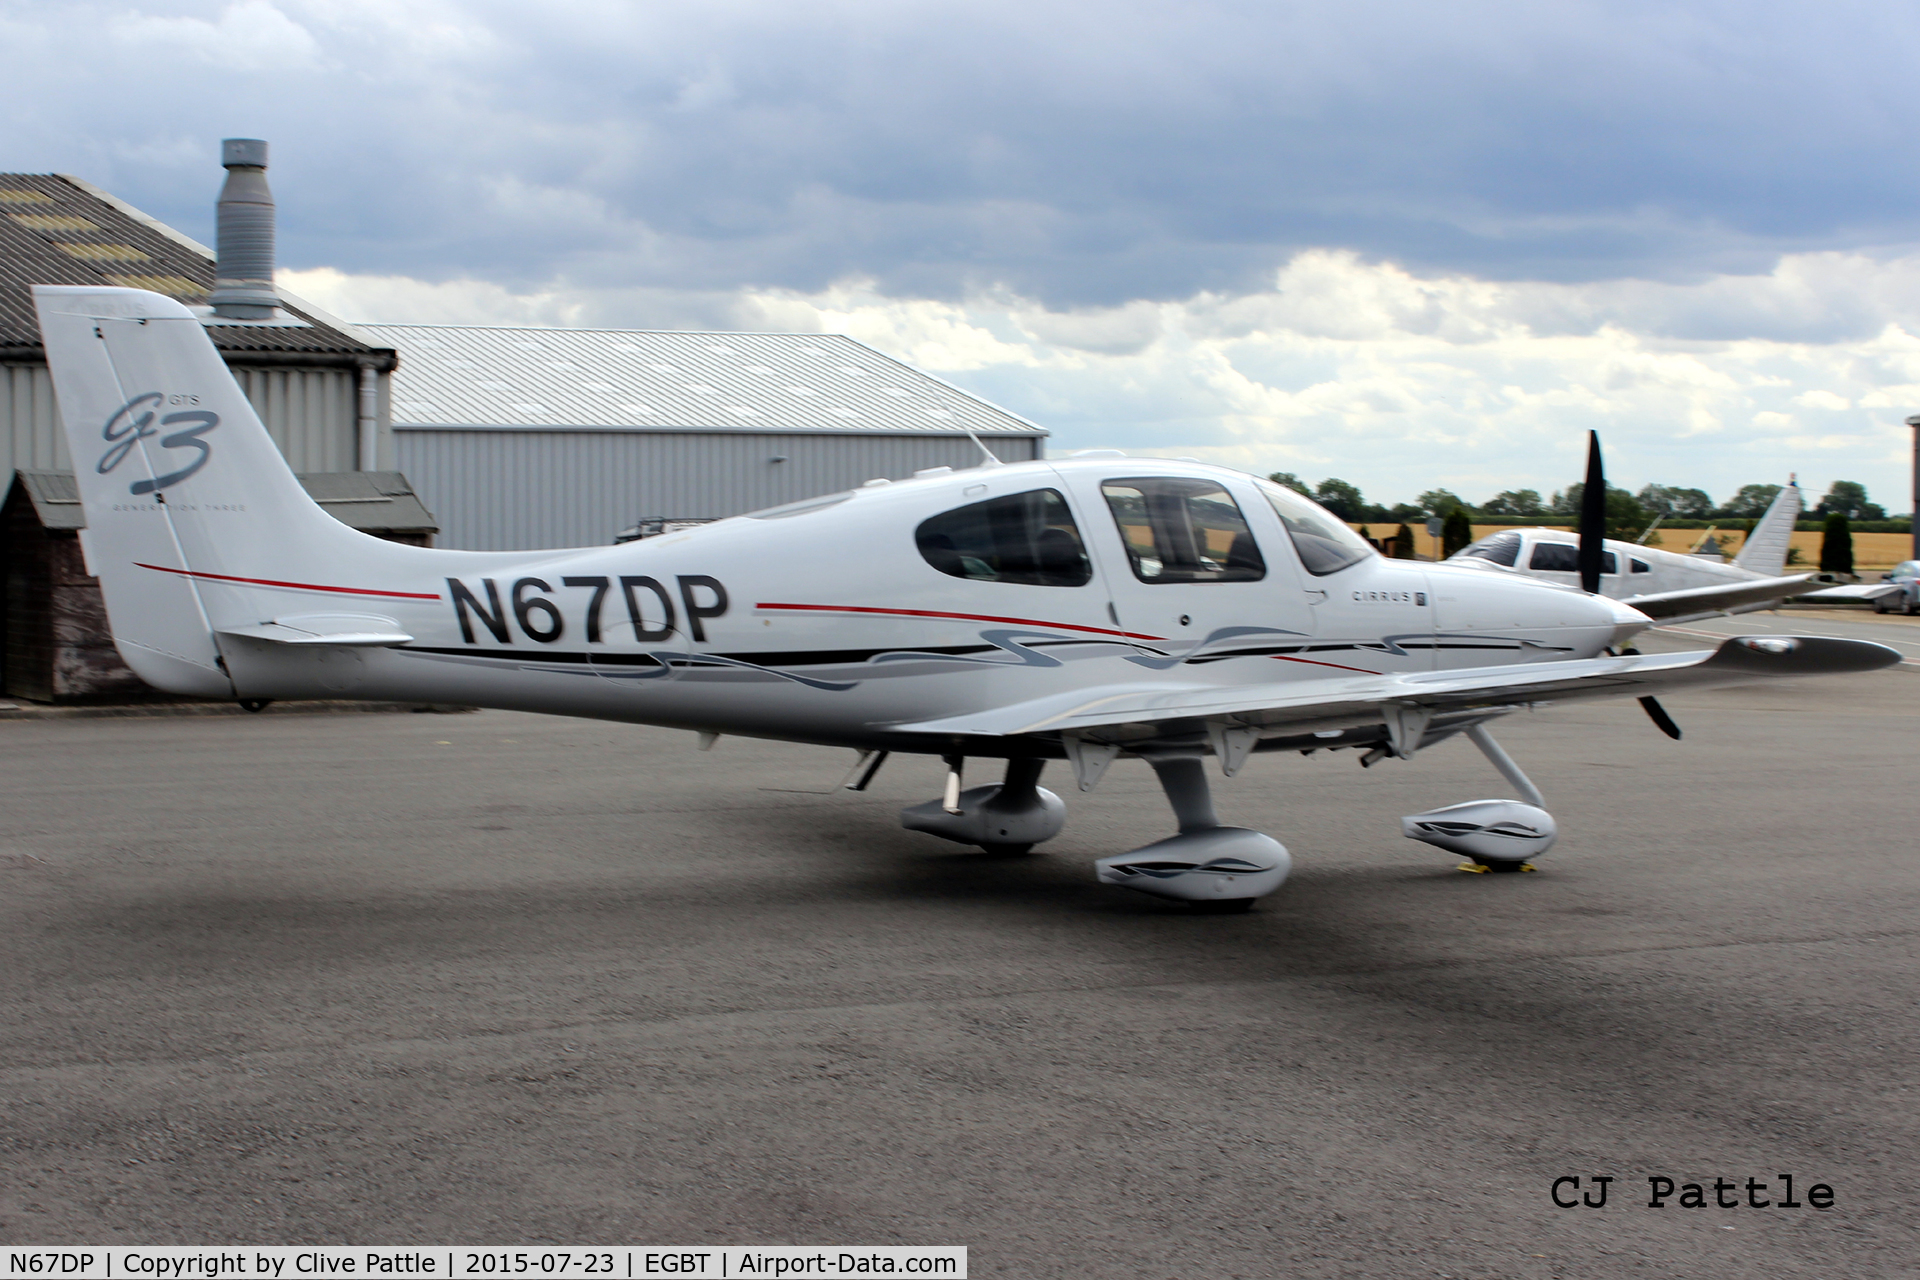 N67DP, 2008 Cirrus SR22 G3 GTS C/N 2933, Parked up at Turweston Aerodrome EGBT